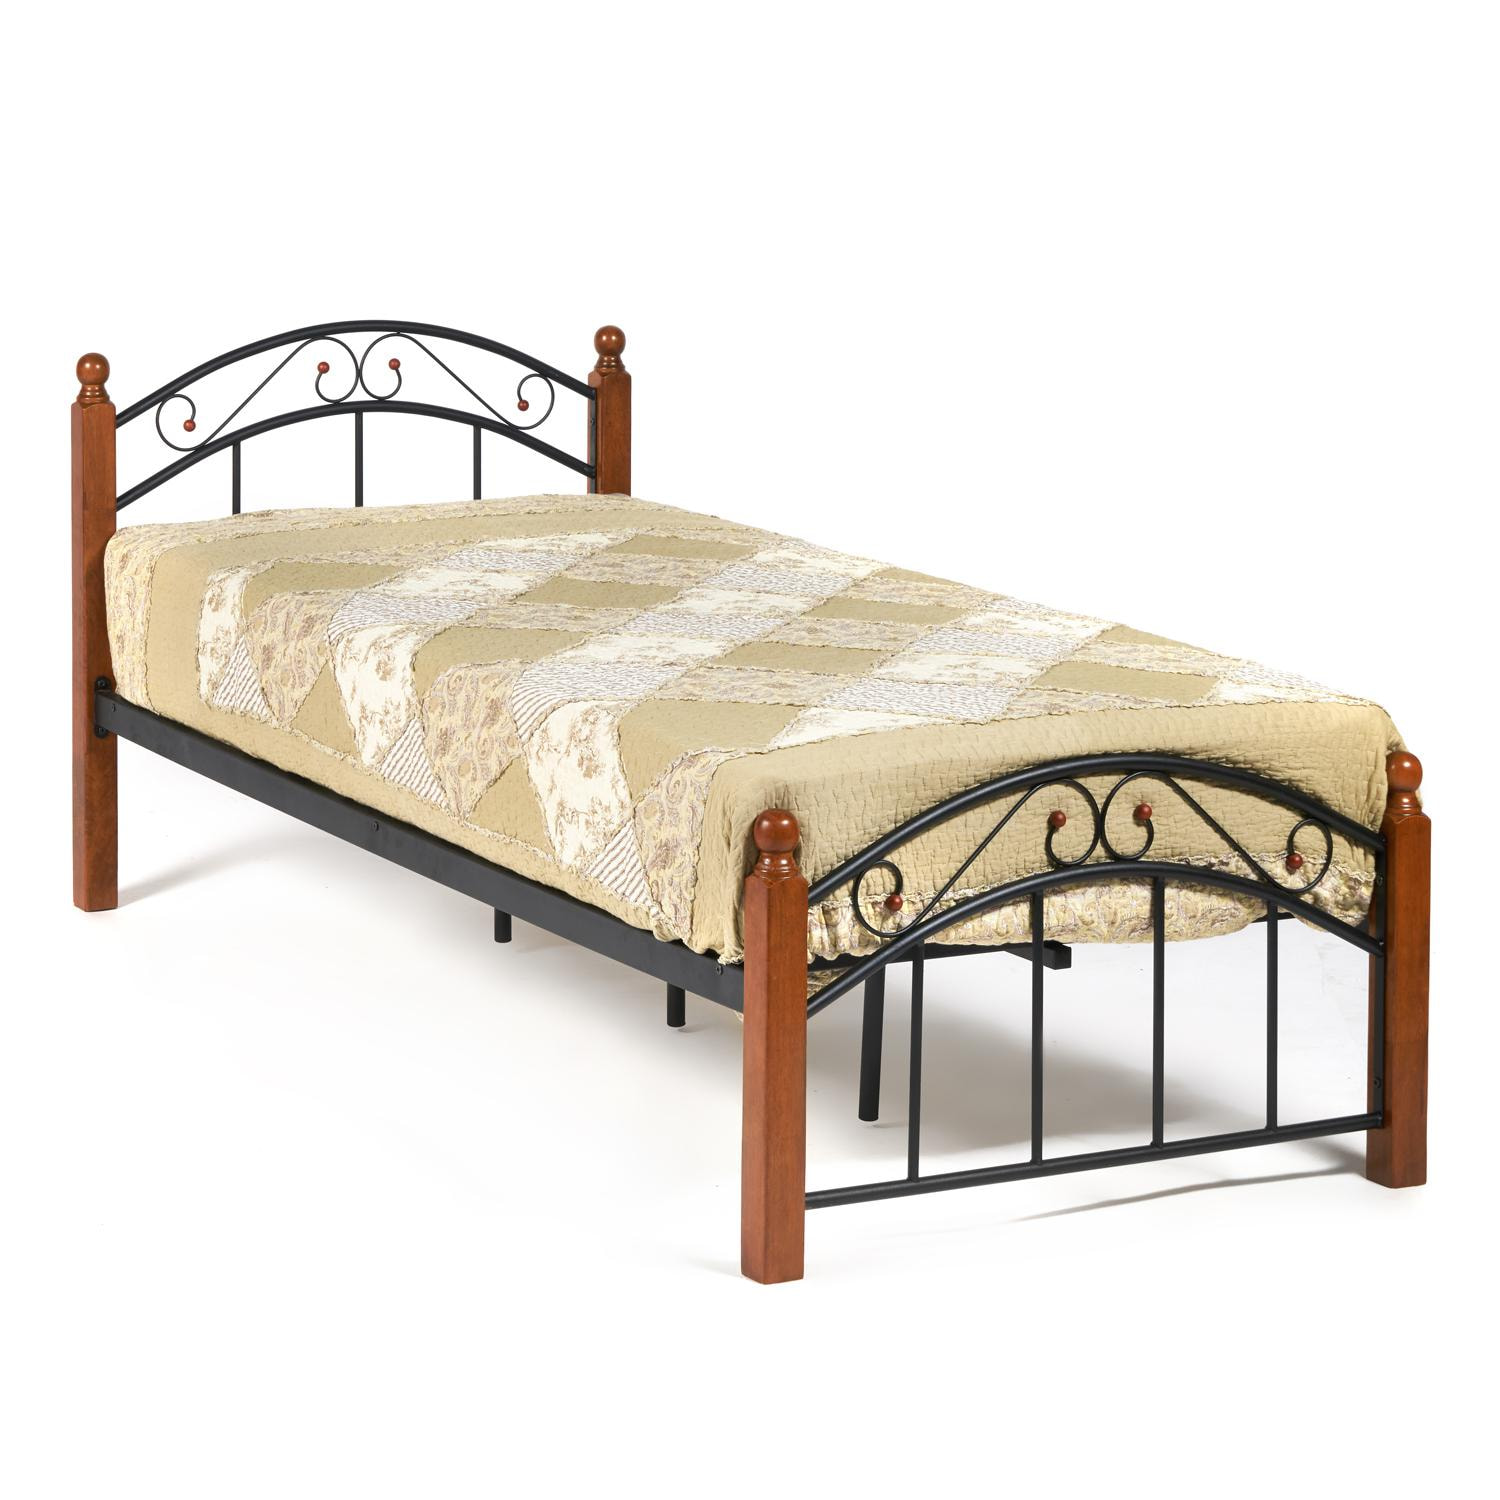 Кровать AT-8077 Wood slat base дерево гевея/металл, 90*200 см (Single bed), красный дуб/черный